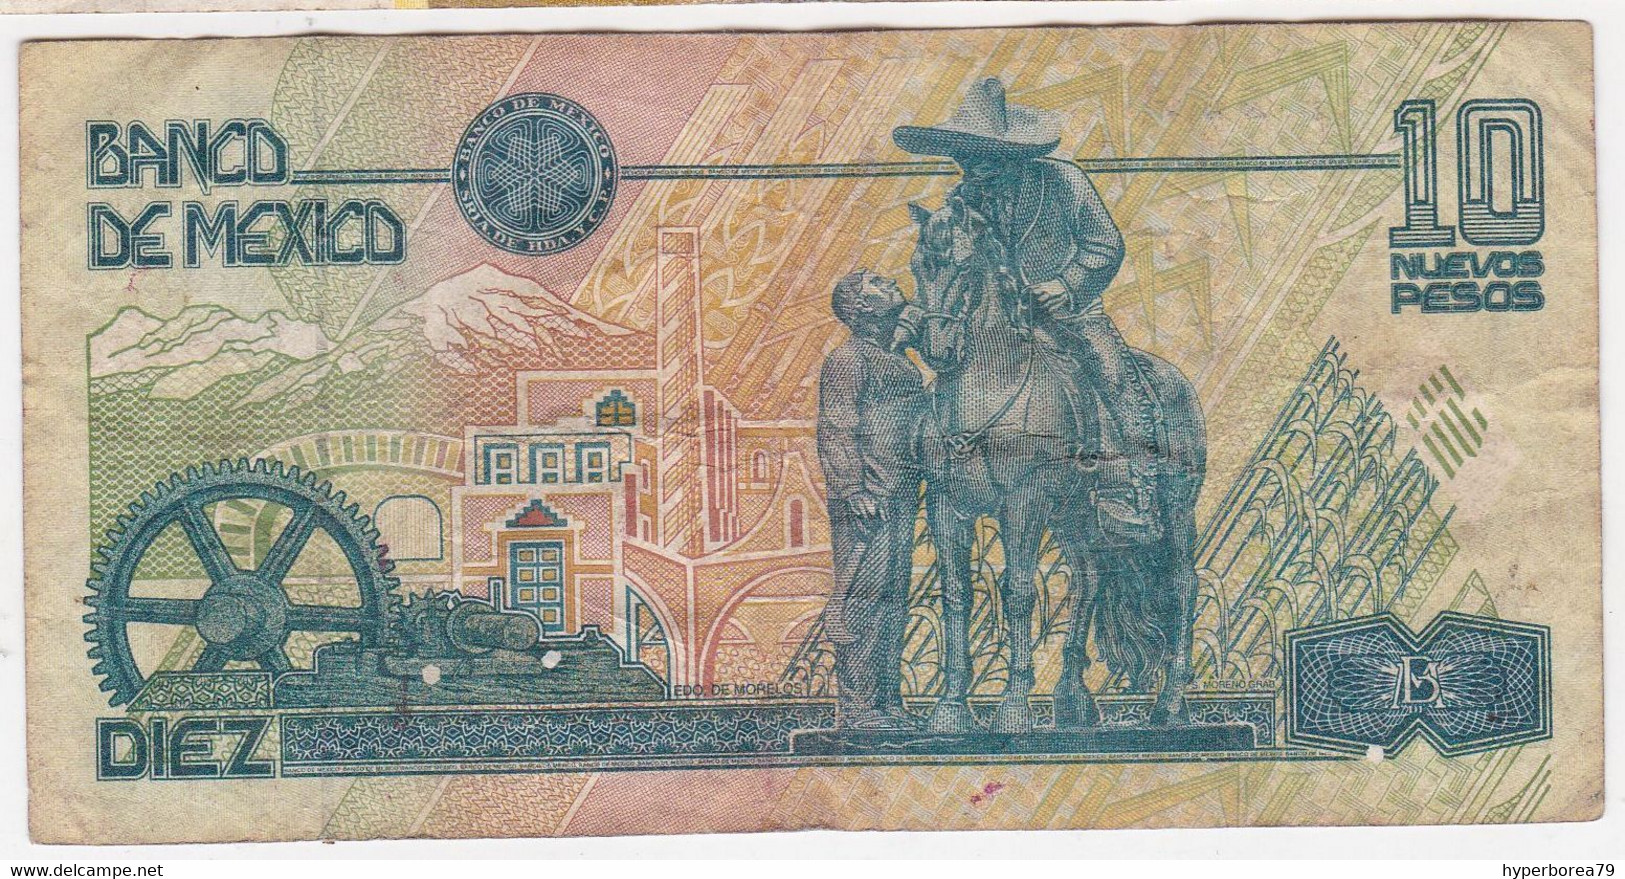 Mexico P 99 - 10 Nuevos Pesos 10.12.1992 - Fine+ - Mexico